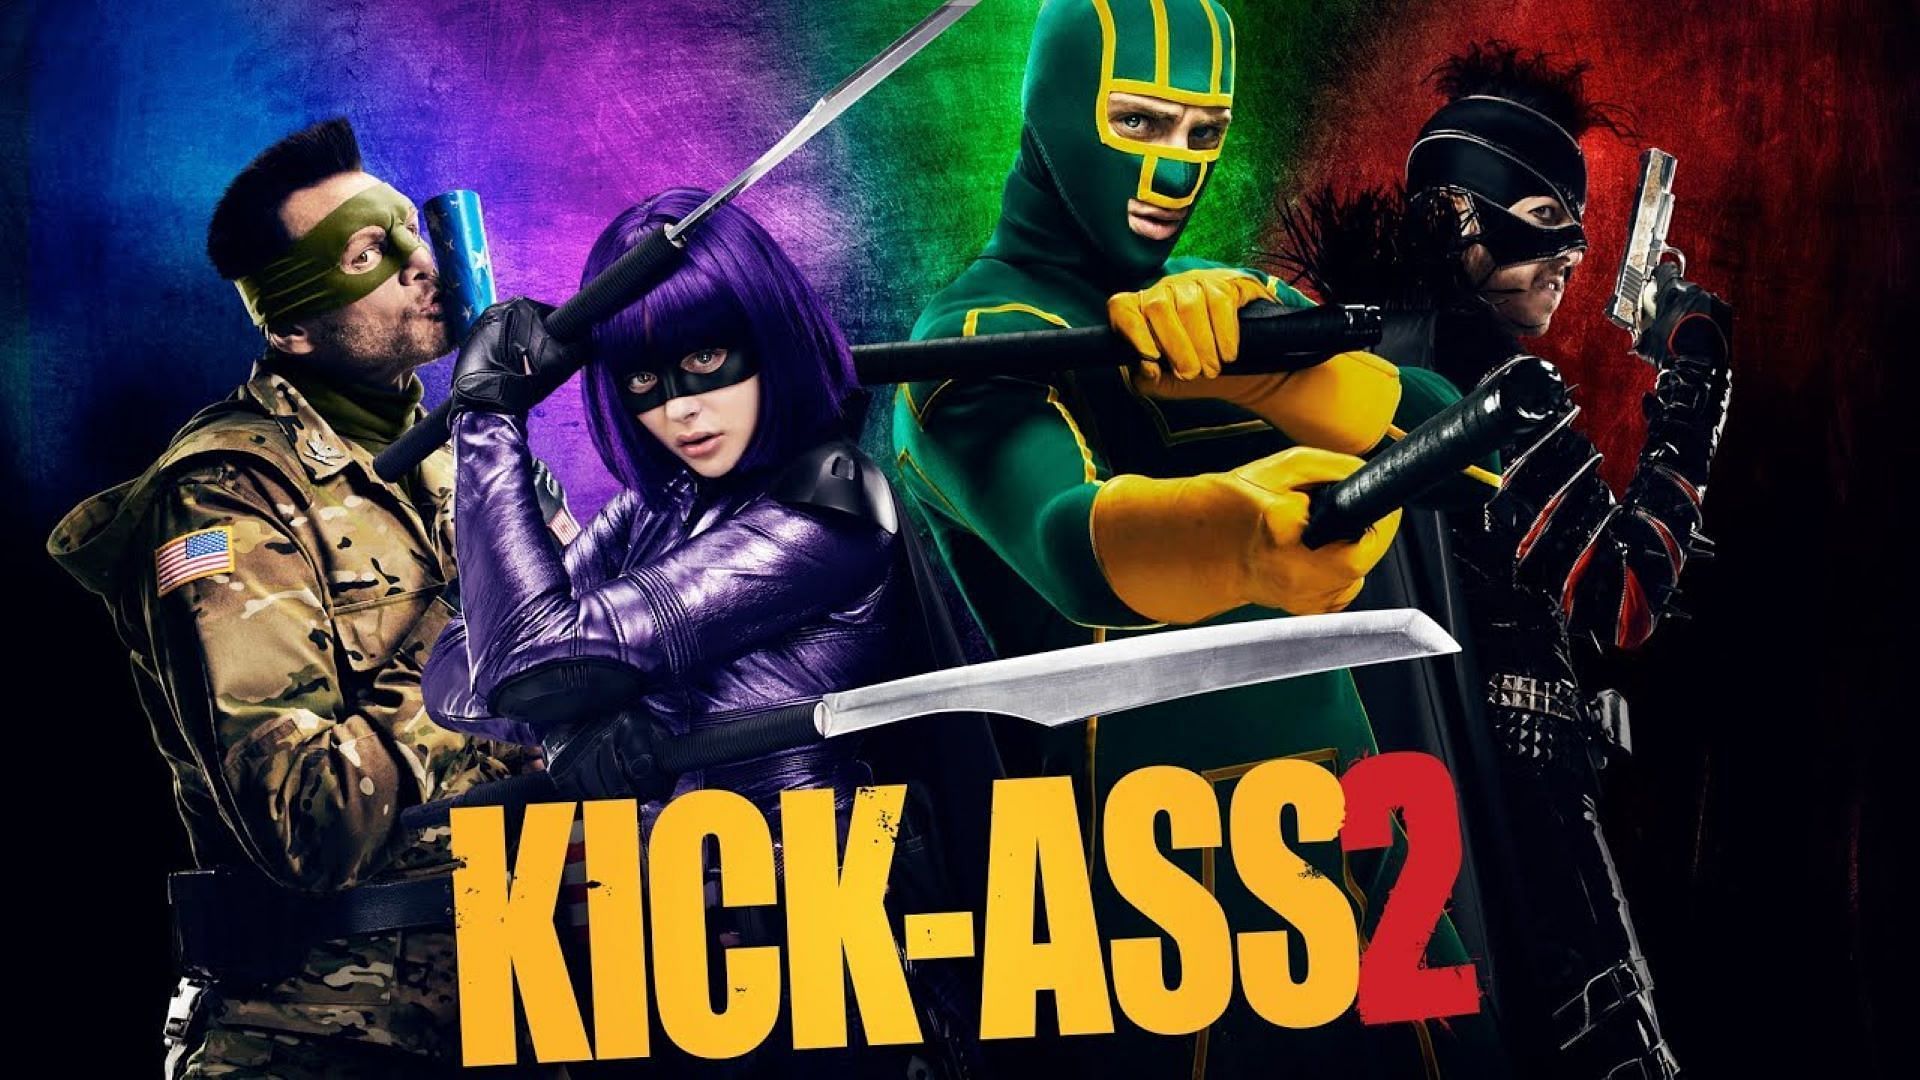 Kick Ass 2 is more darker than the prequel ( Image via Kick Ass)